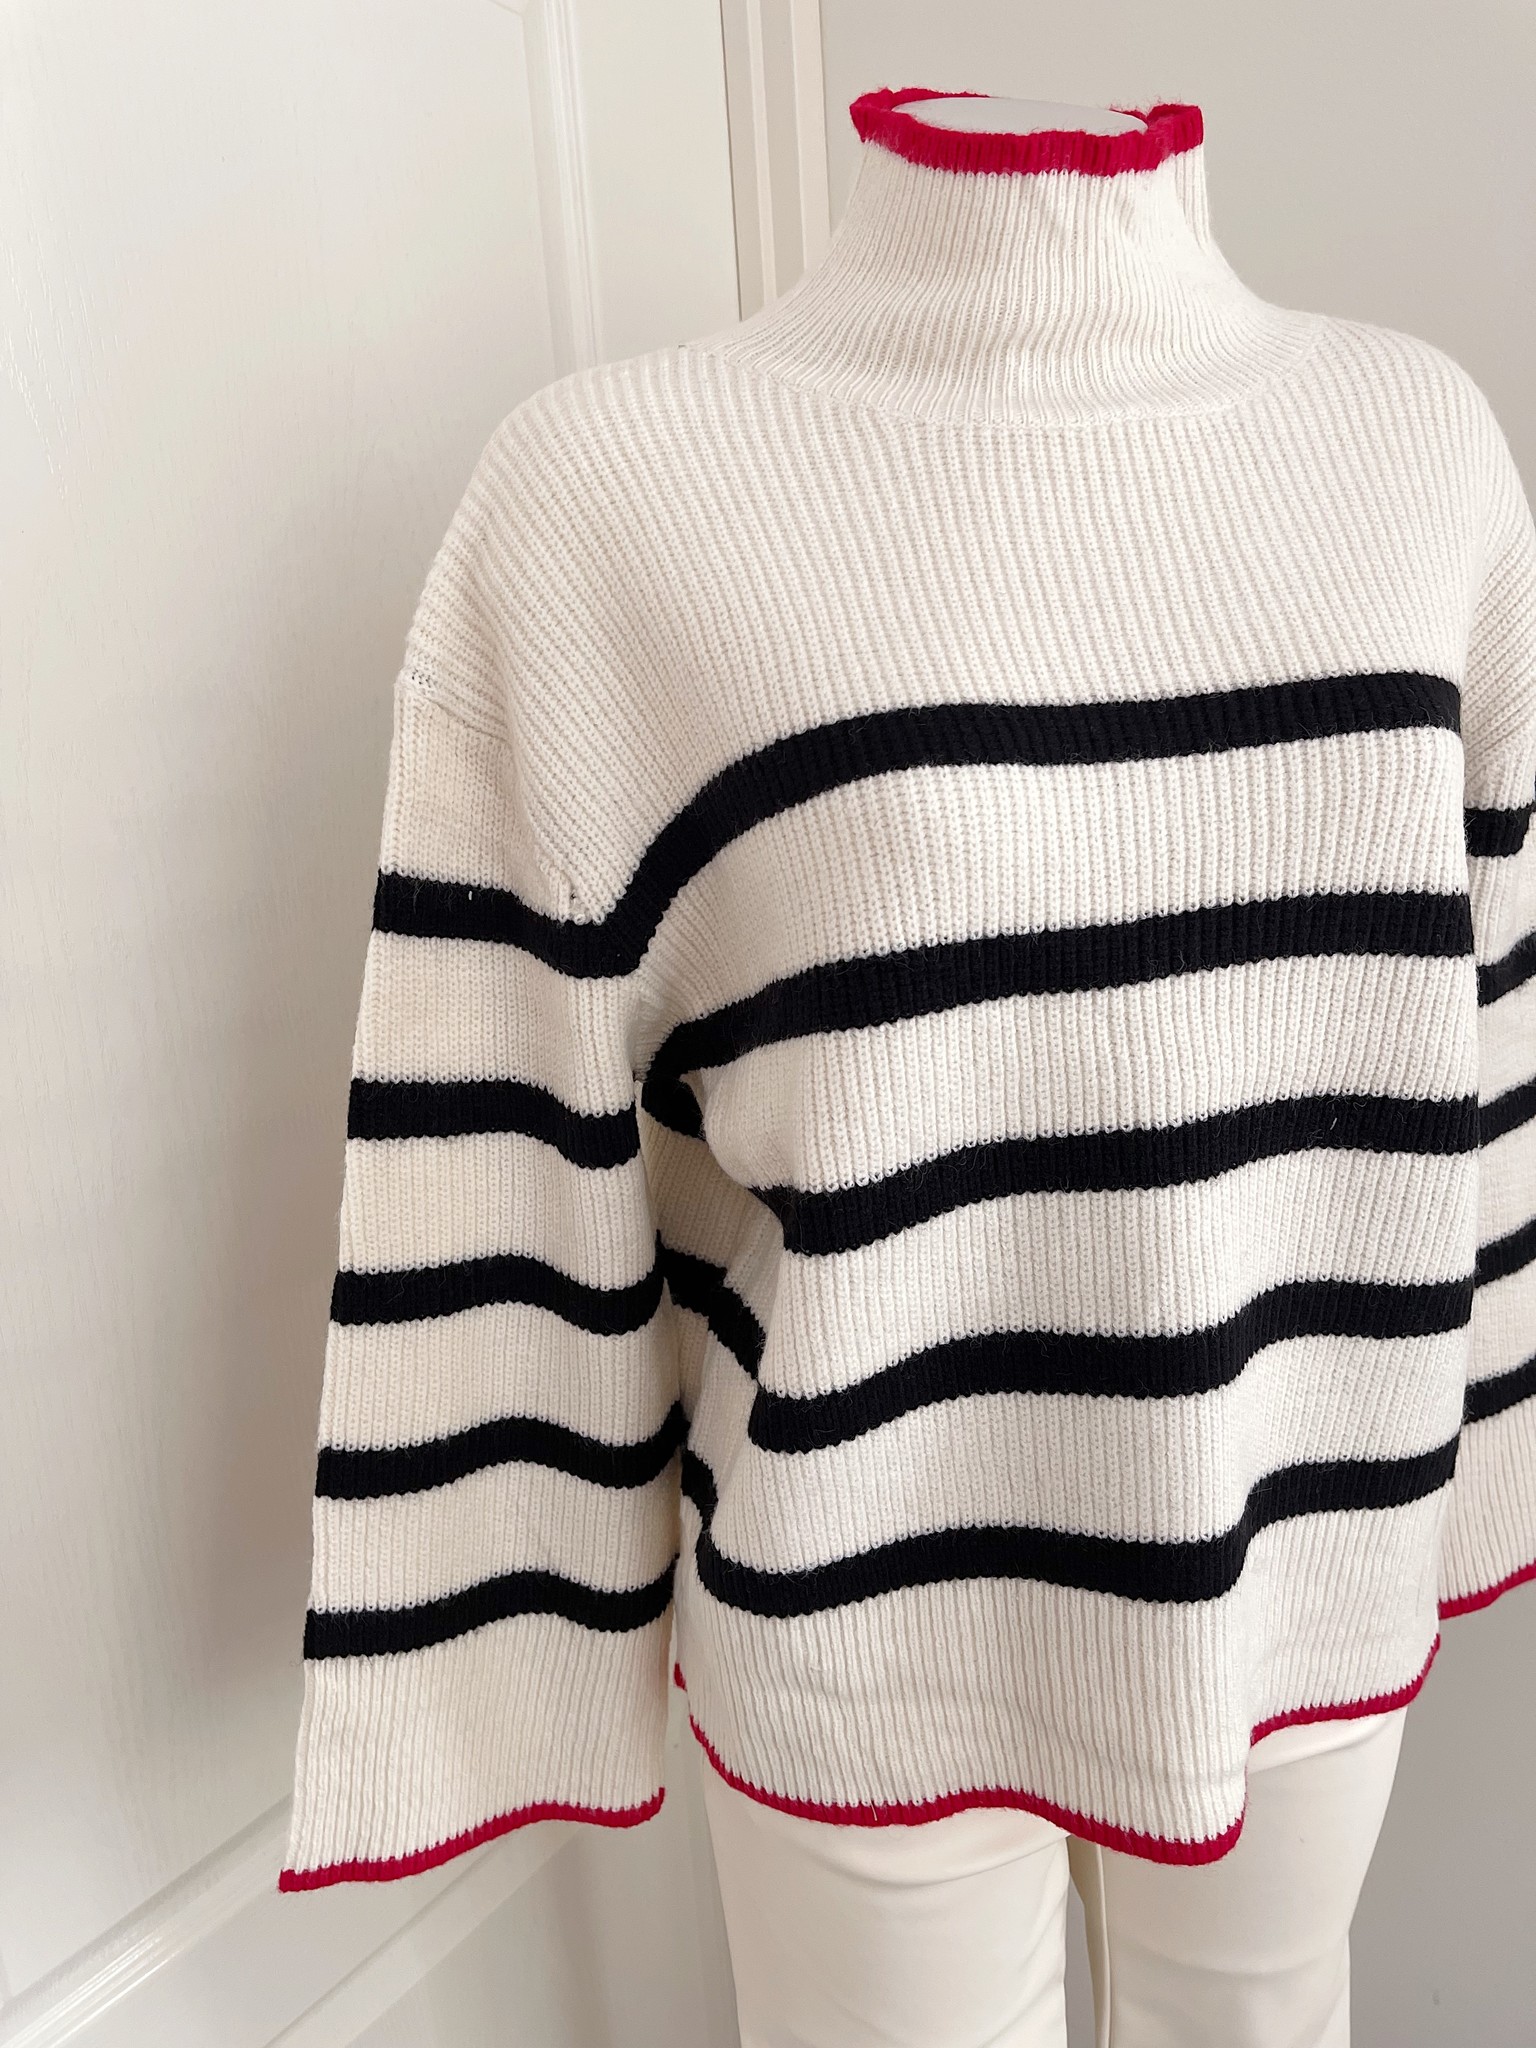 Celine Striped Sweater / Beige - Hello My Love